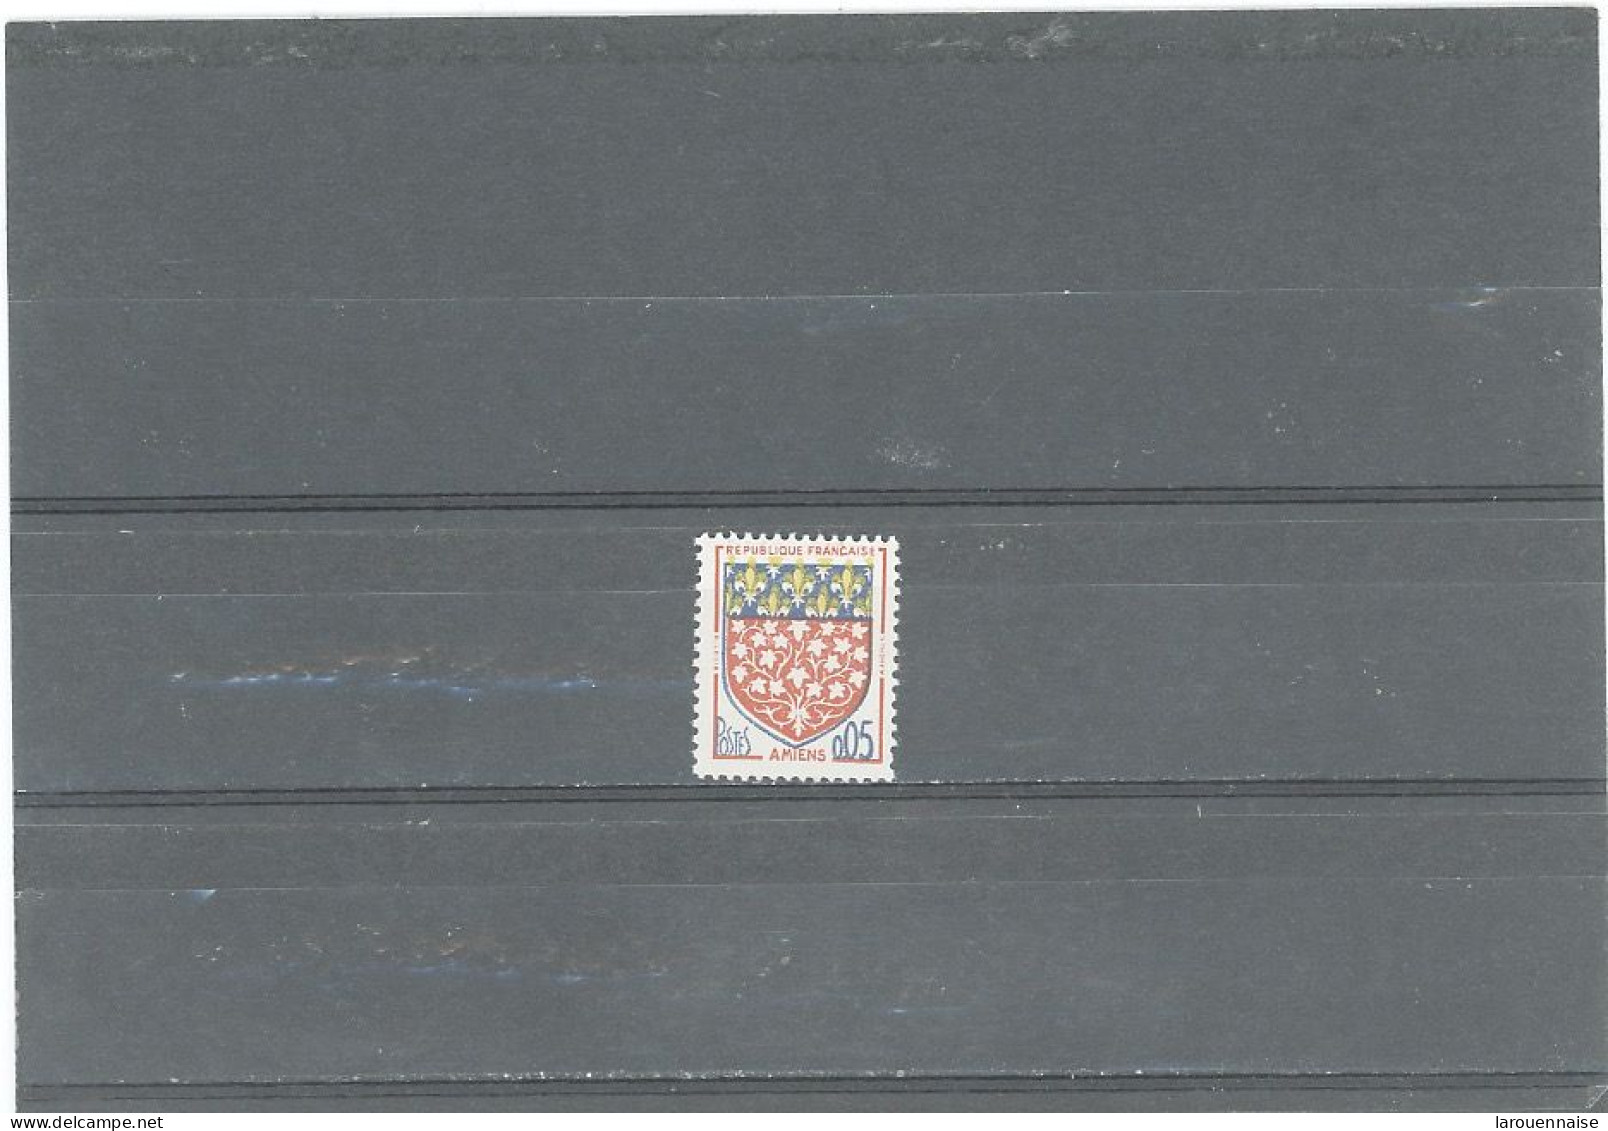 VARIÉTÉS -N°1352 N** 0,05 -ARMOIRIES D'AMIENS-COULEUR JAUNE TRÈS DÉCALÉE - Unused Stamps